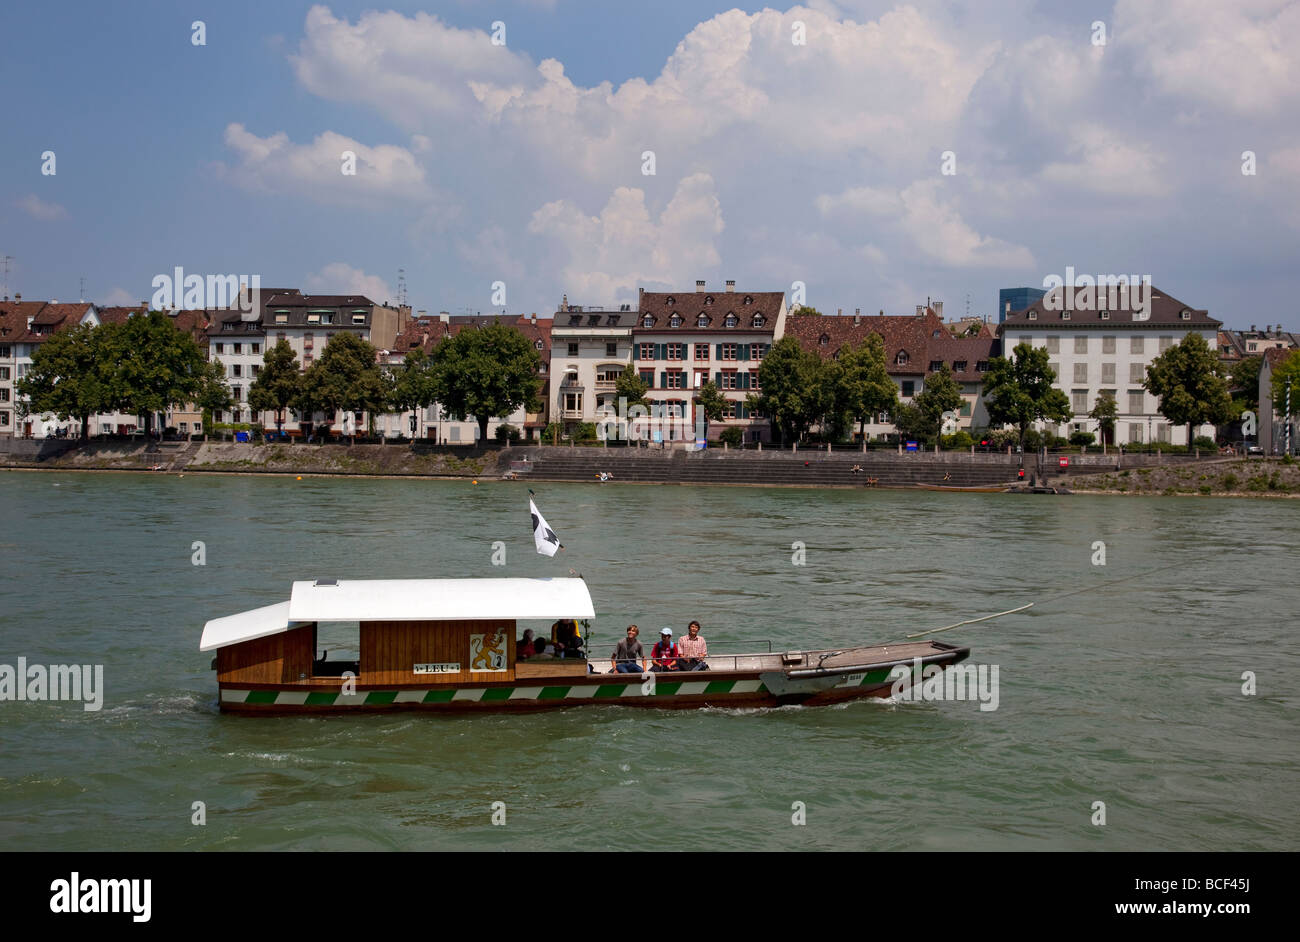 Rivière et ferry, bateau à passagers du Rhin rheinpromenade, Bâle, Suisse, Europe. Banque D'Images